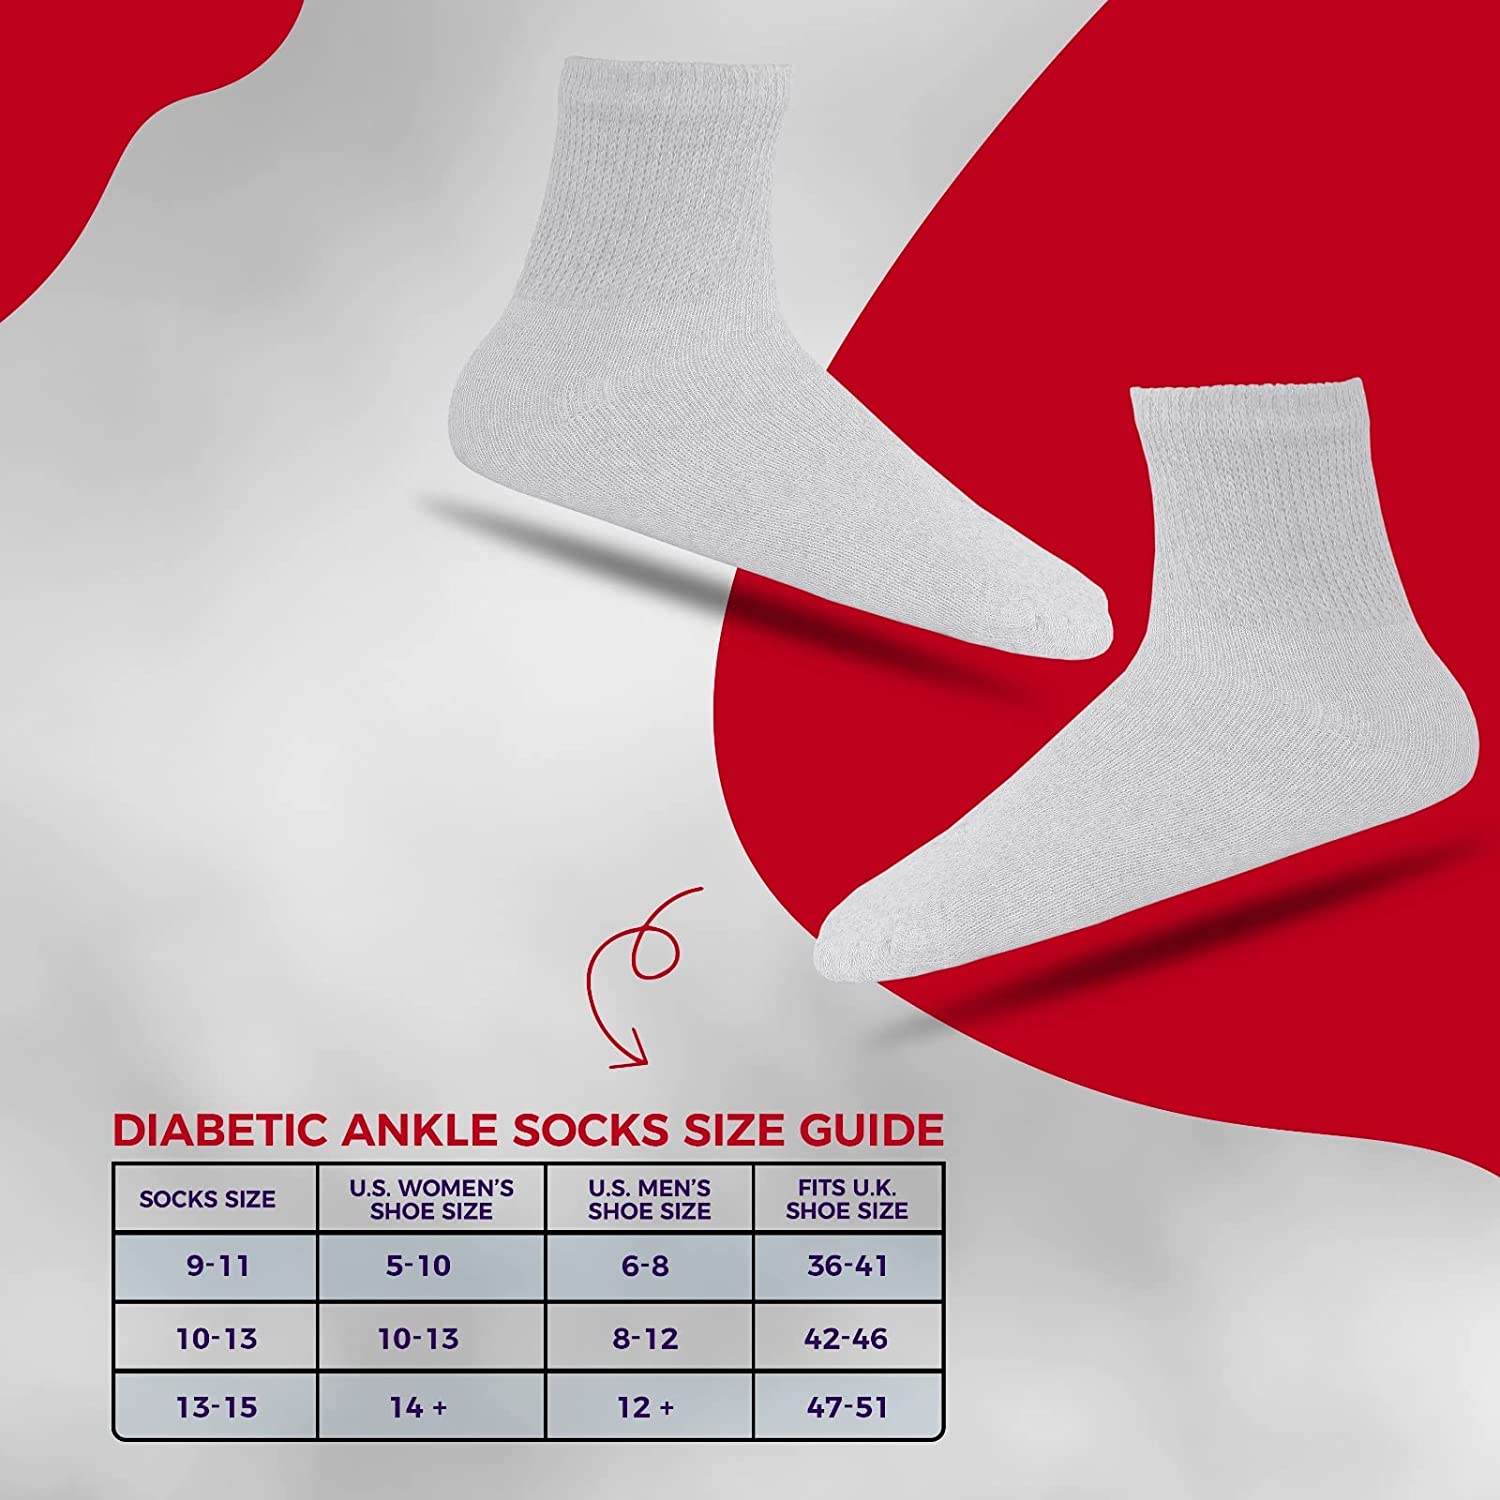 Diabetic Ankle Socks, Non-Binding Circulatory Doctor Approved Cushion Cotton Quarter Socks for Men’s Women’s 3,6,12 Pack